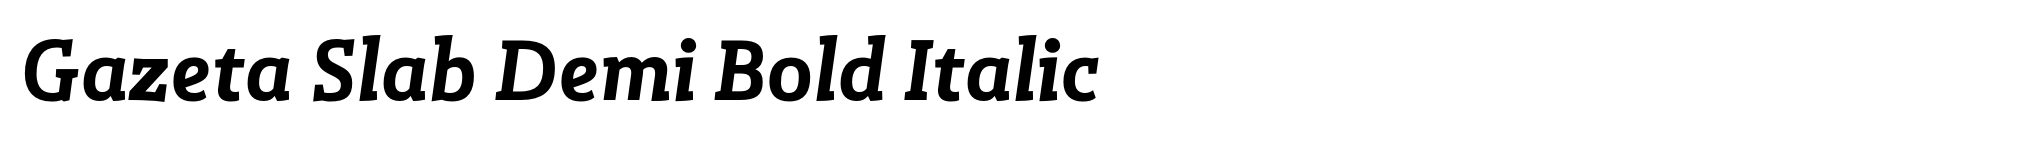 Gazeta Slab Demi Bold Italic image